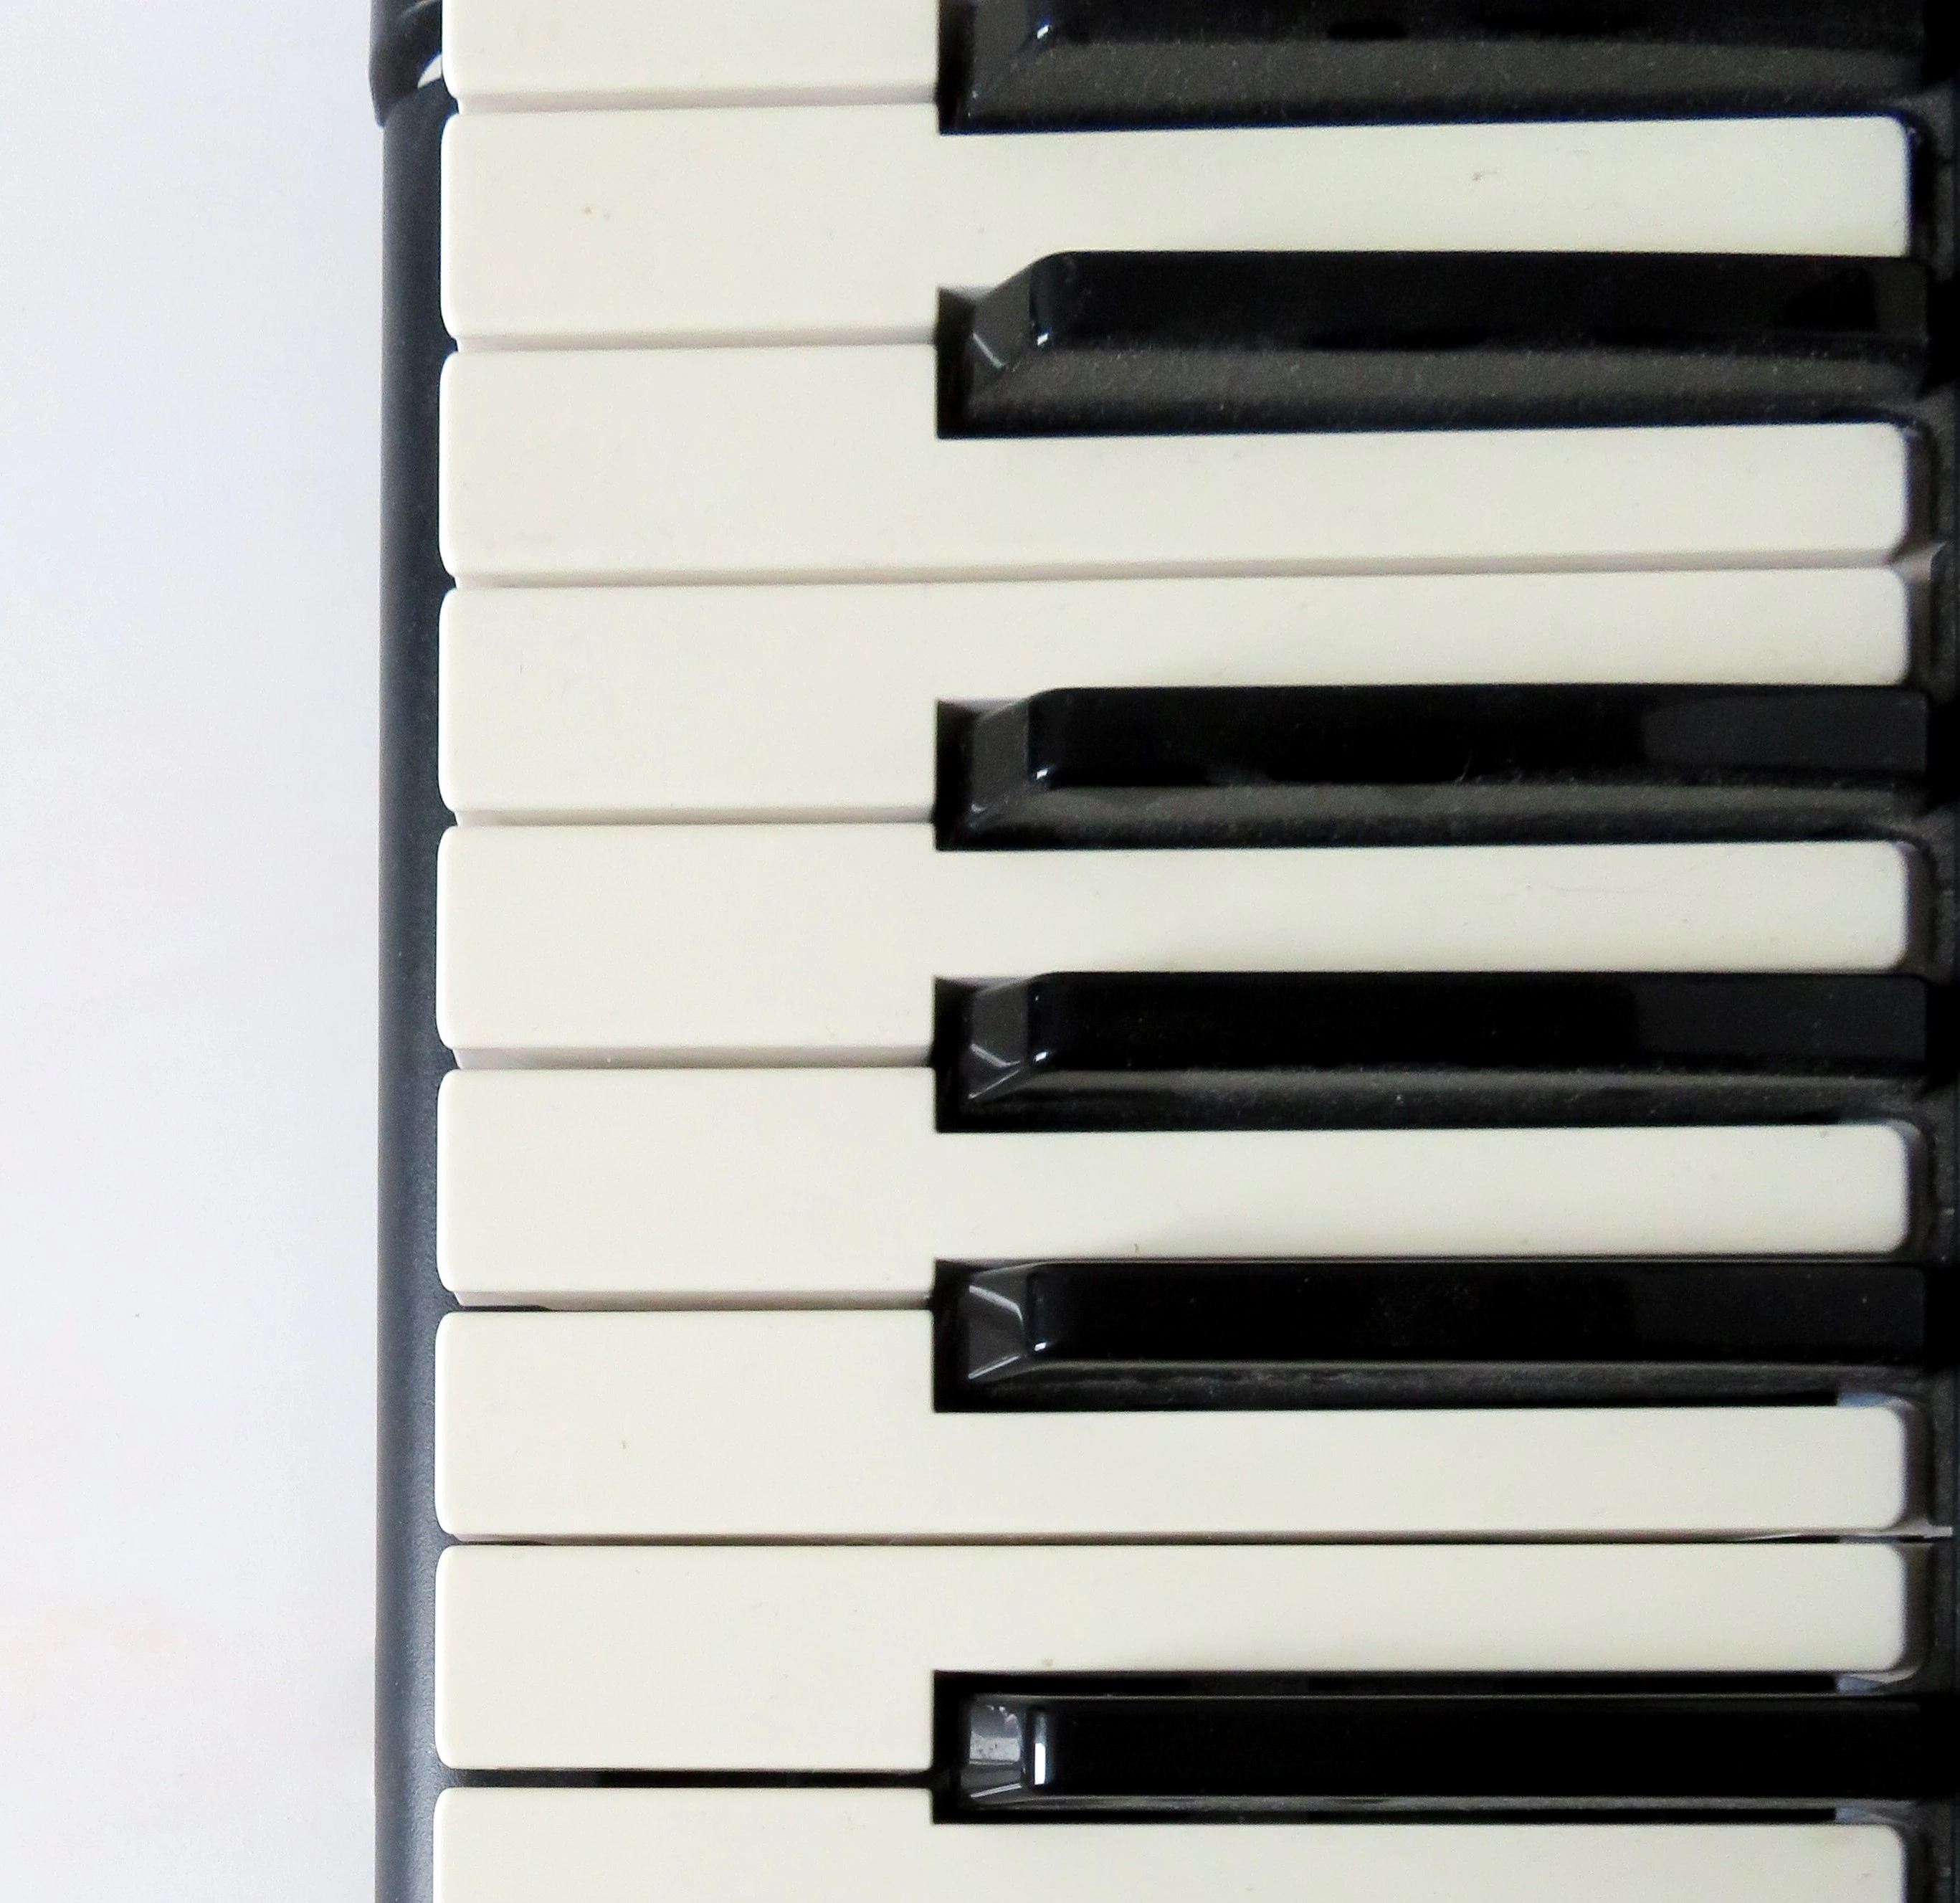 Piano keys photo